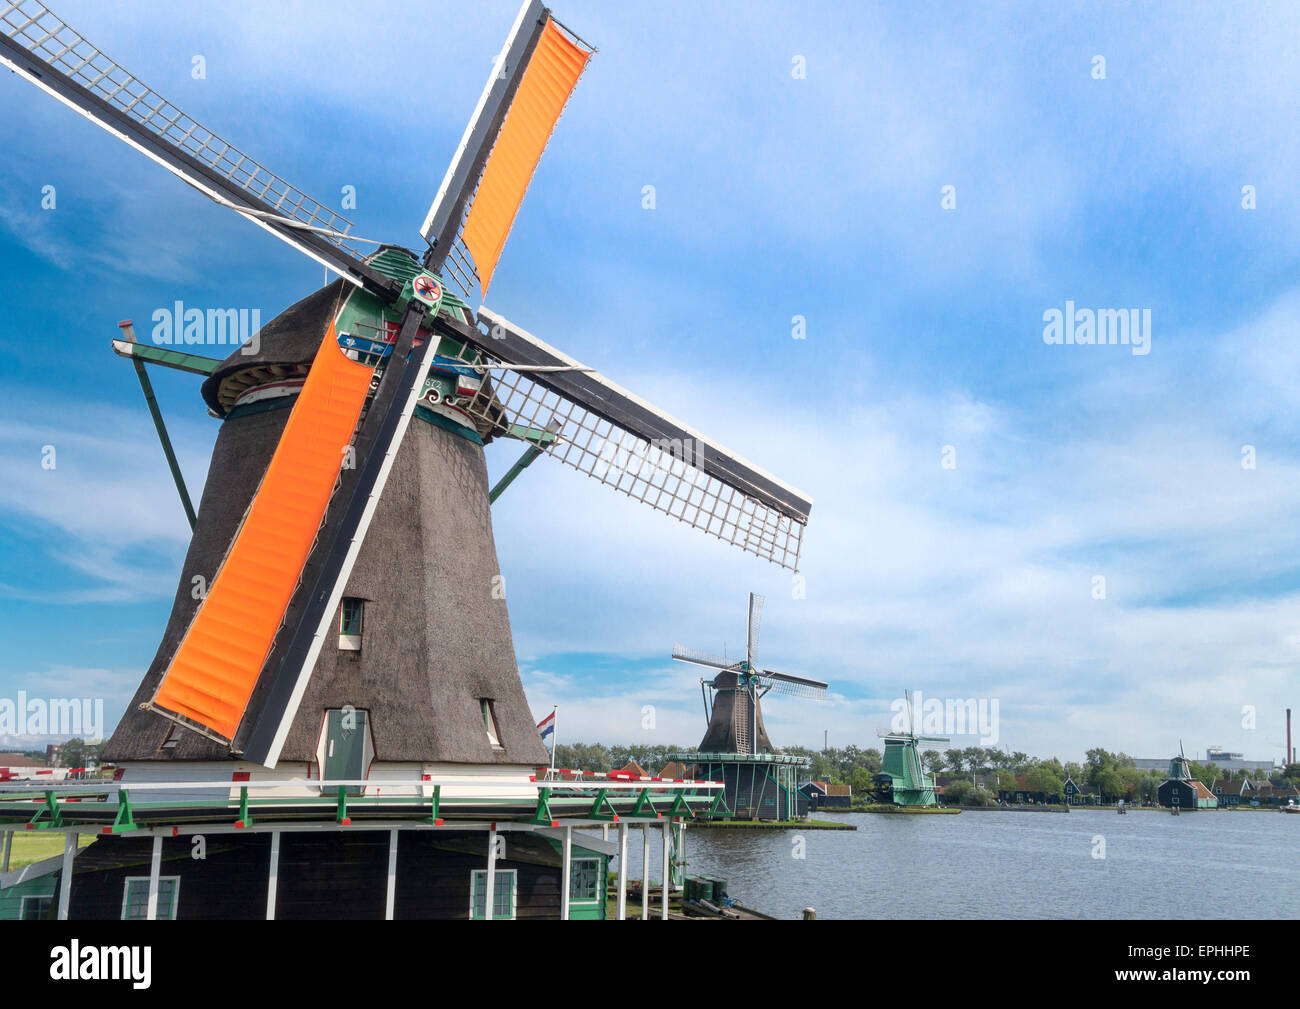 Holland mulini a vento a De Zaanse Schans. La filatura frantoio Mulino a vento. Lavoro olandese di vecchi mulini a vento lungo il fiume de Zaan. Foto Stock